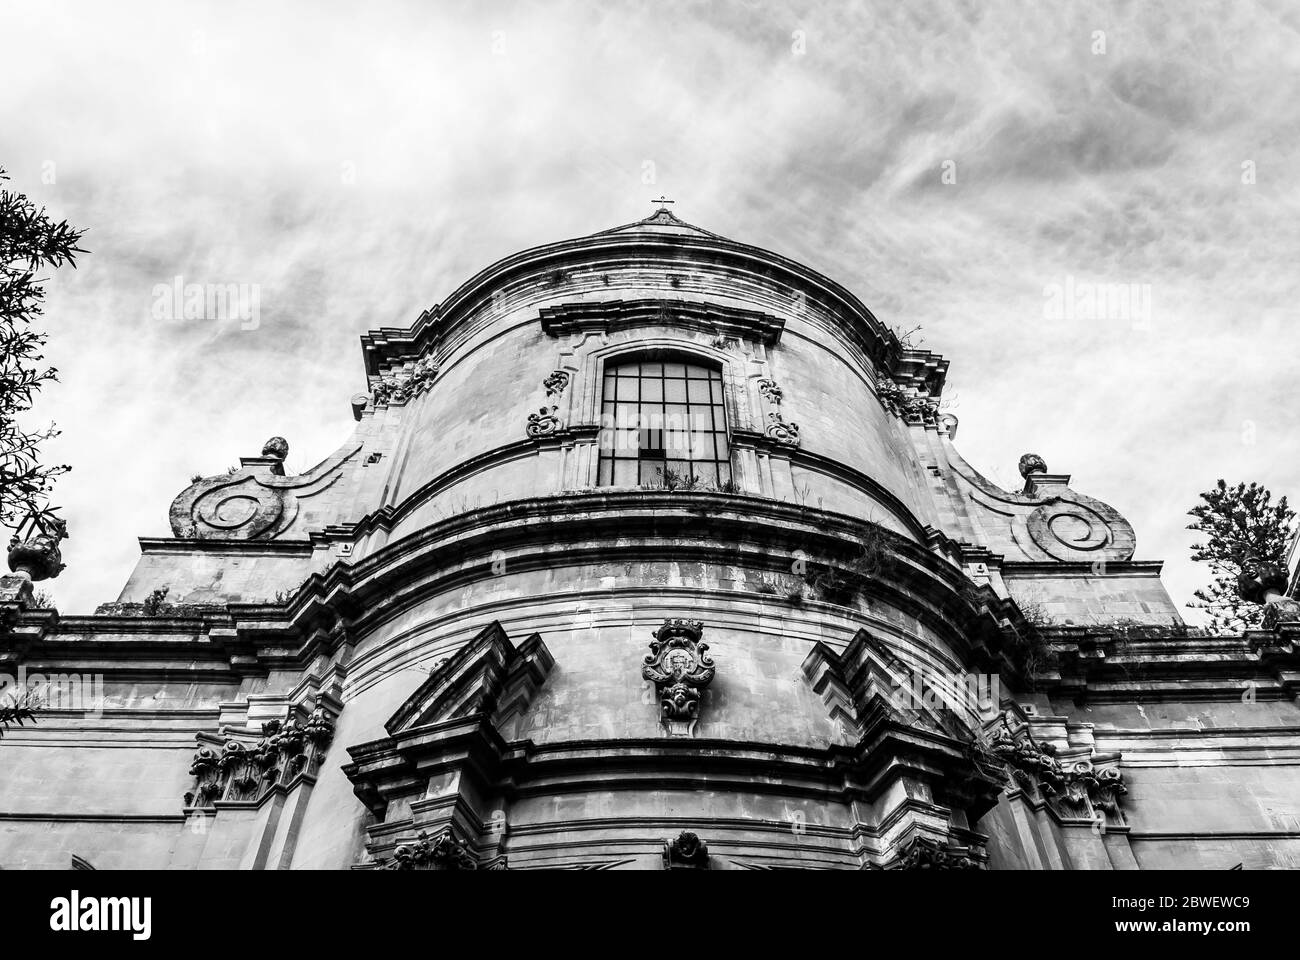 Sizilianische Architektur in Schwarz und Weiß Stockfoto